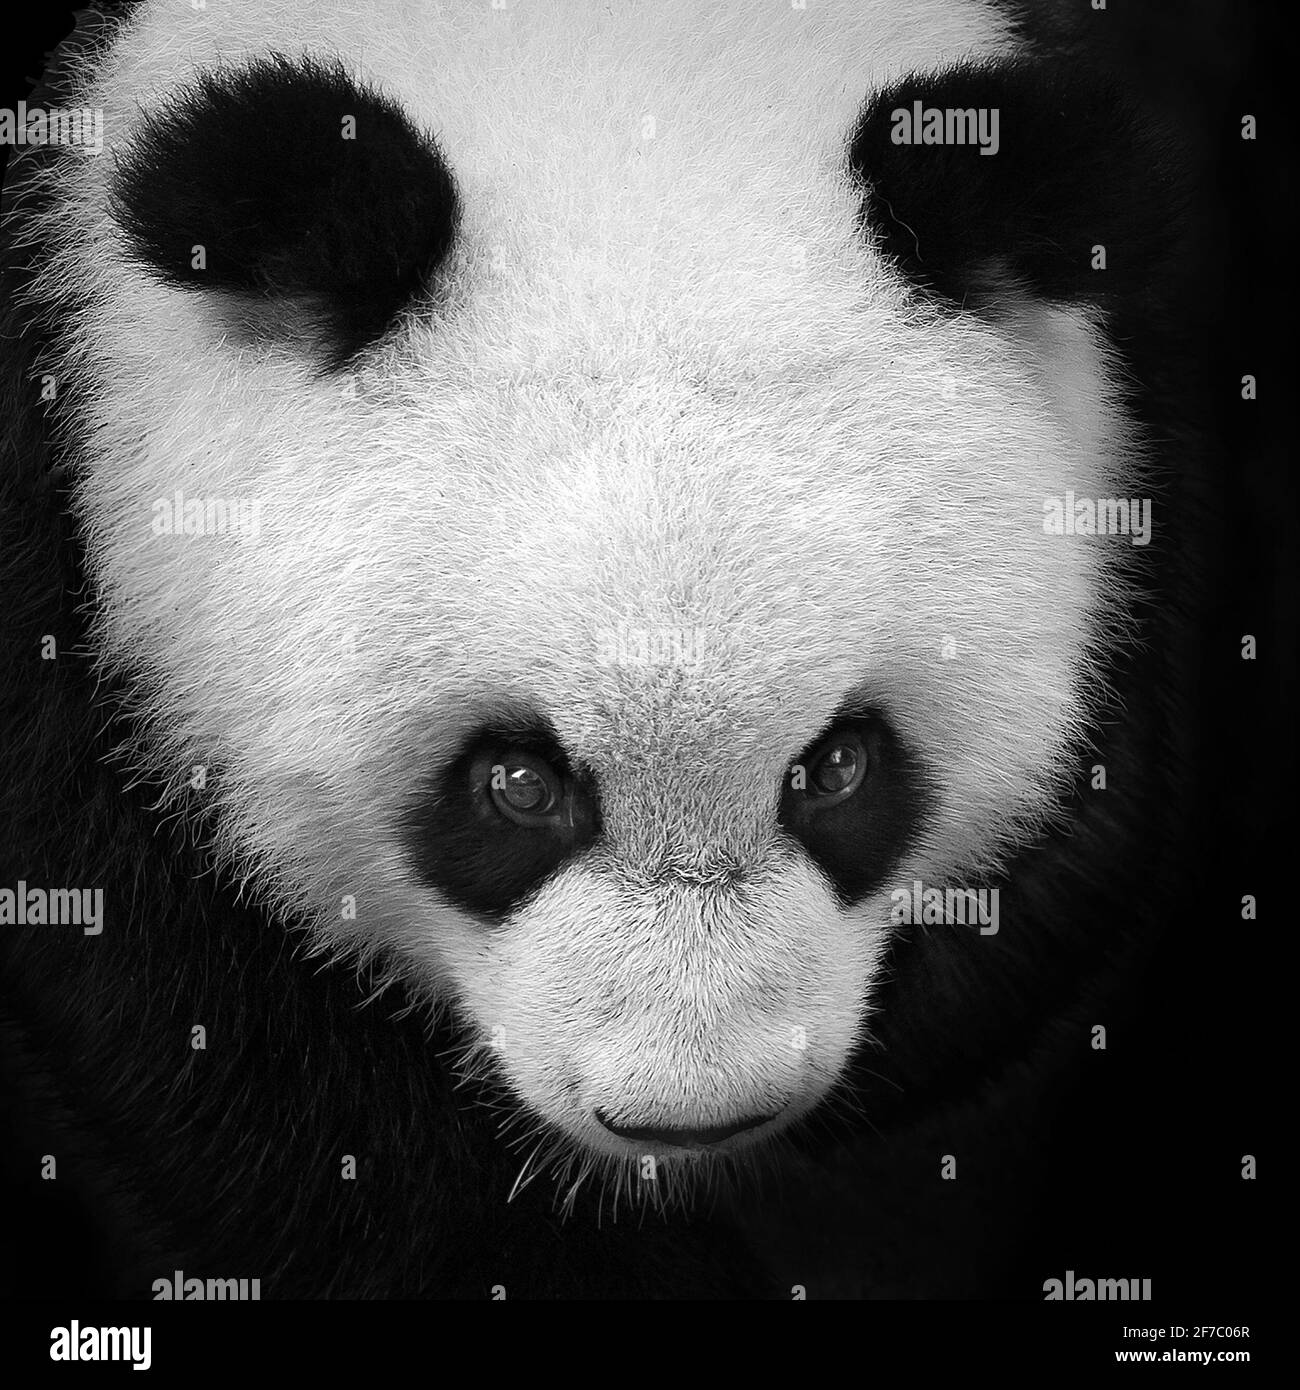 Panda eyes Black and White Stock Photos & Images - Alamy